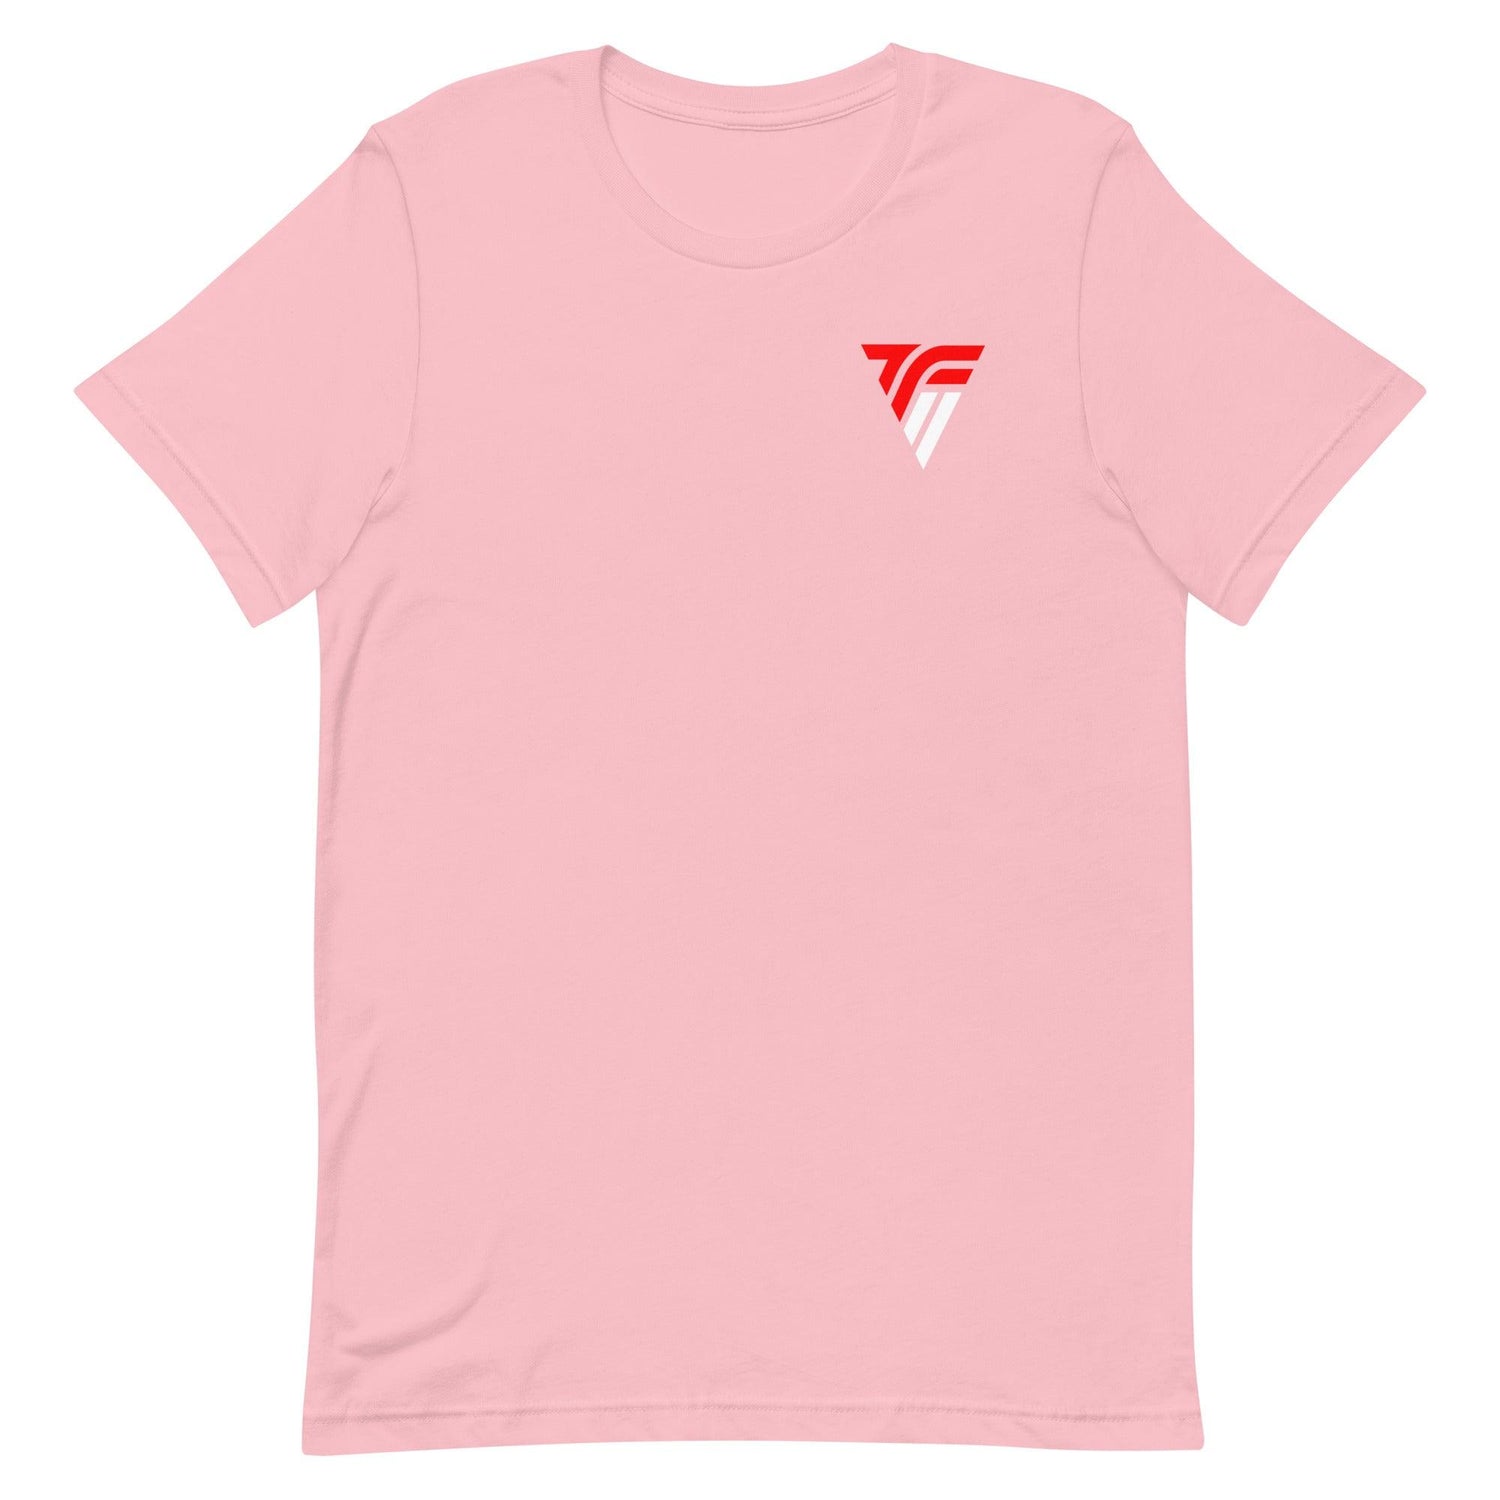 Thomas Fidone II "TFII" t-shirt - Fan Arch